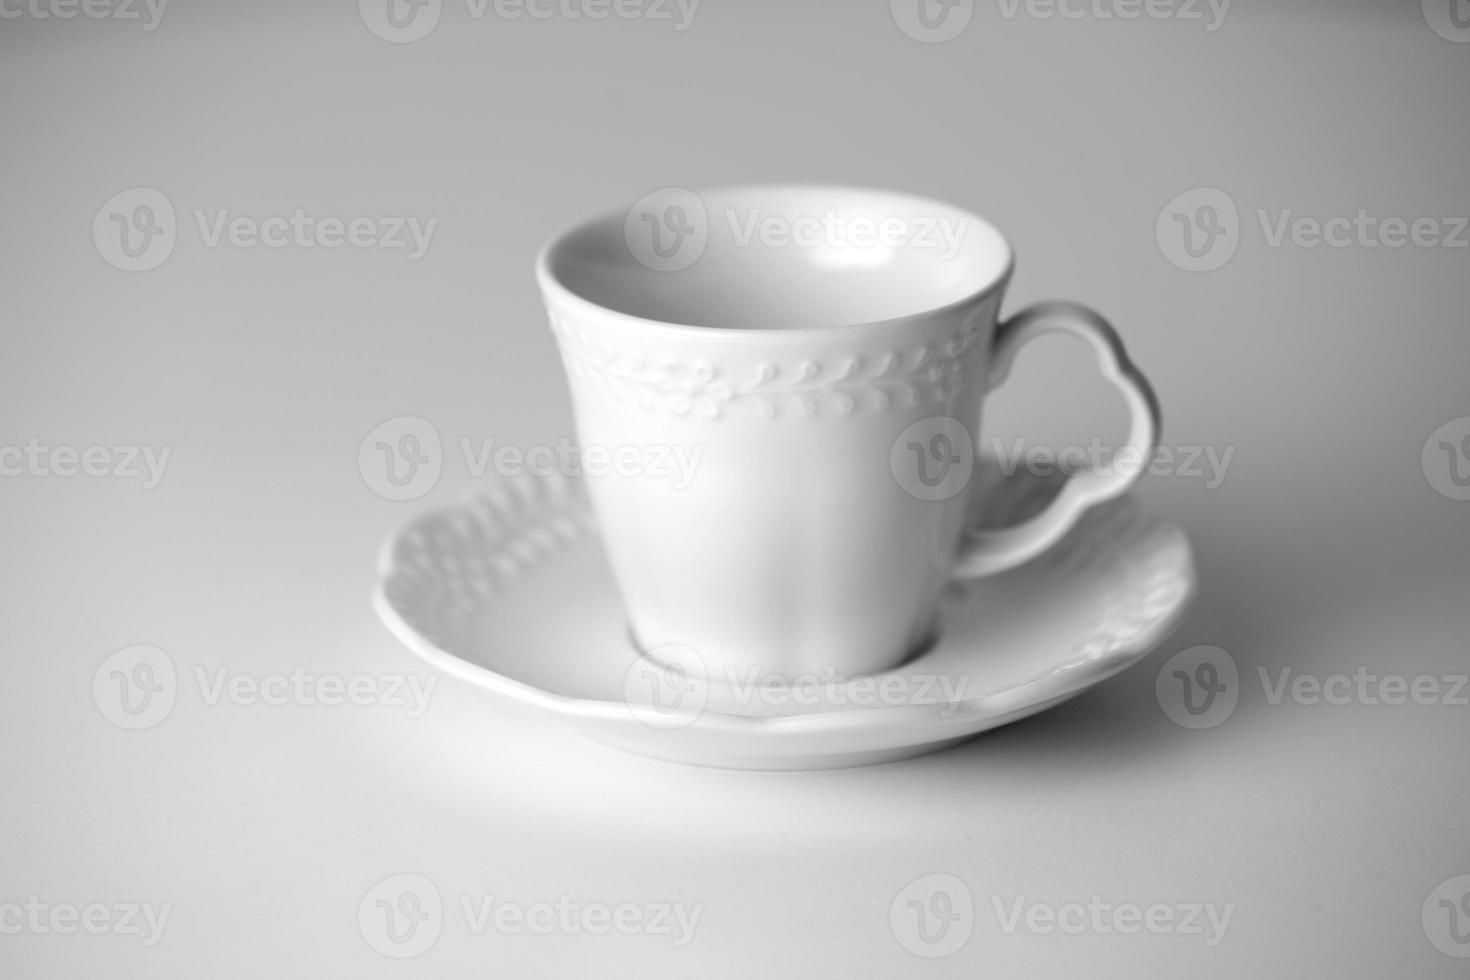 xícara de chá branco e pires com um padrão para bebida em fundo branco. xícara de café de cerâmica ou caneca de perto. utensílios de porcelana clássicos de maquete. espaço de cópia foto